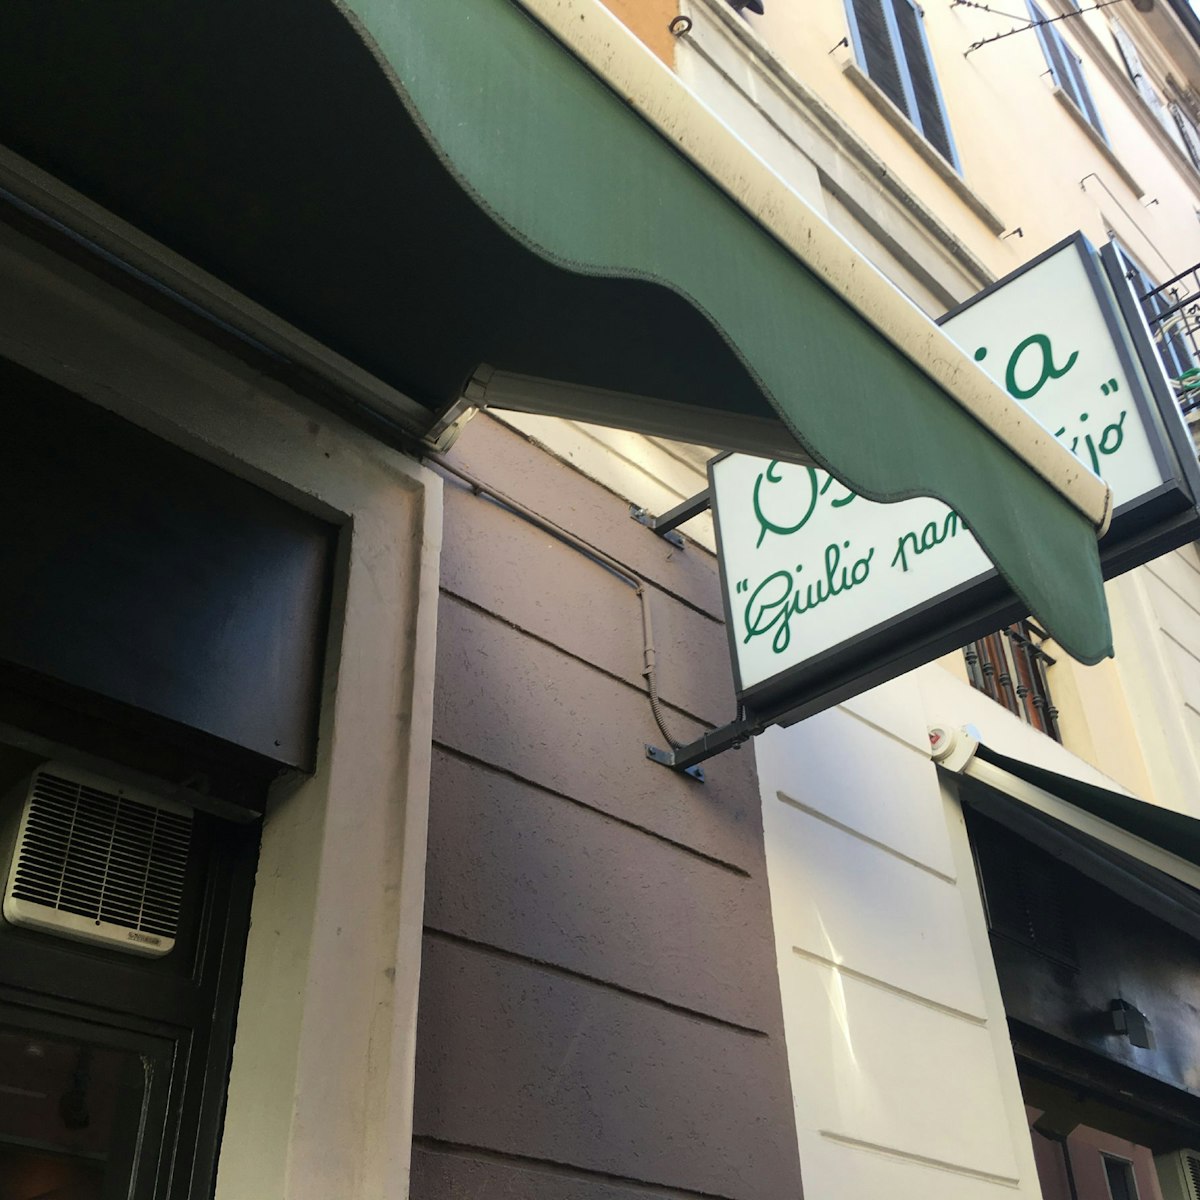 Giulio Pane e Ojo restaurant sign.